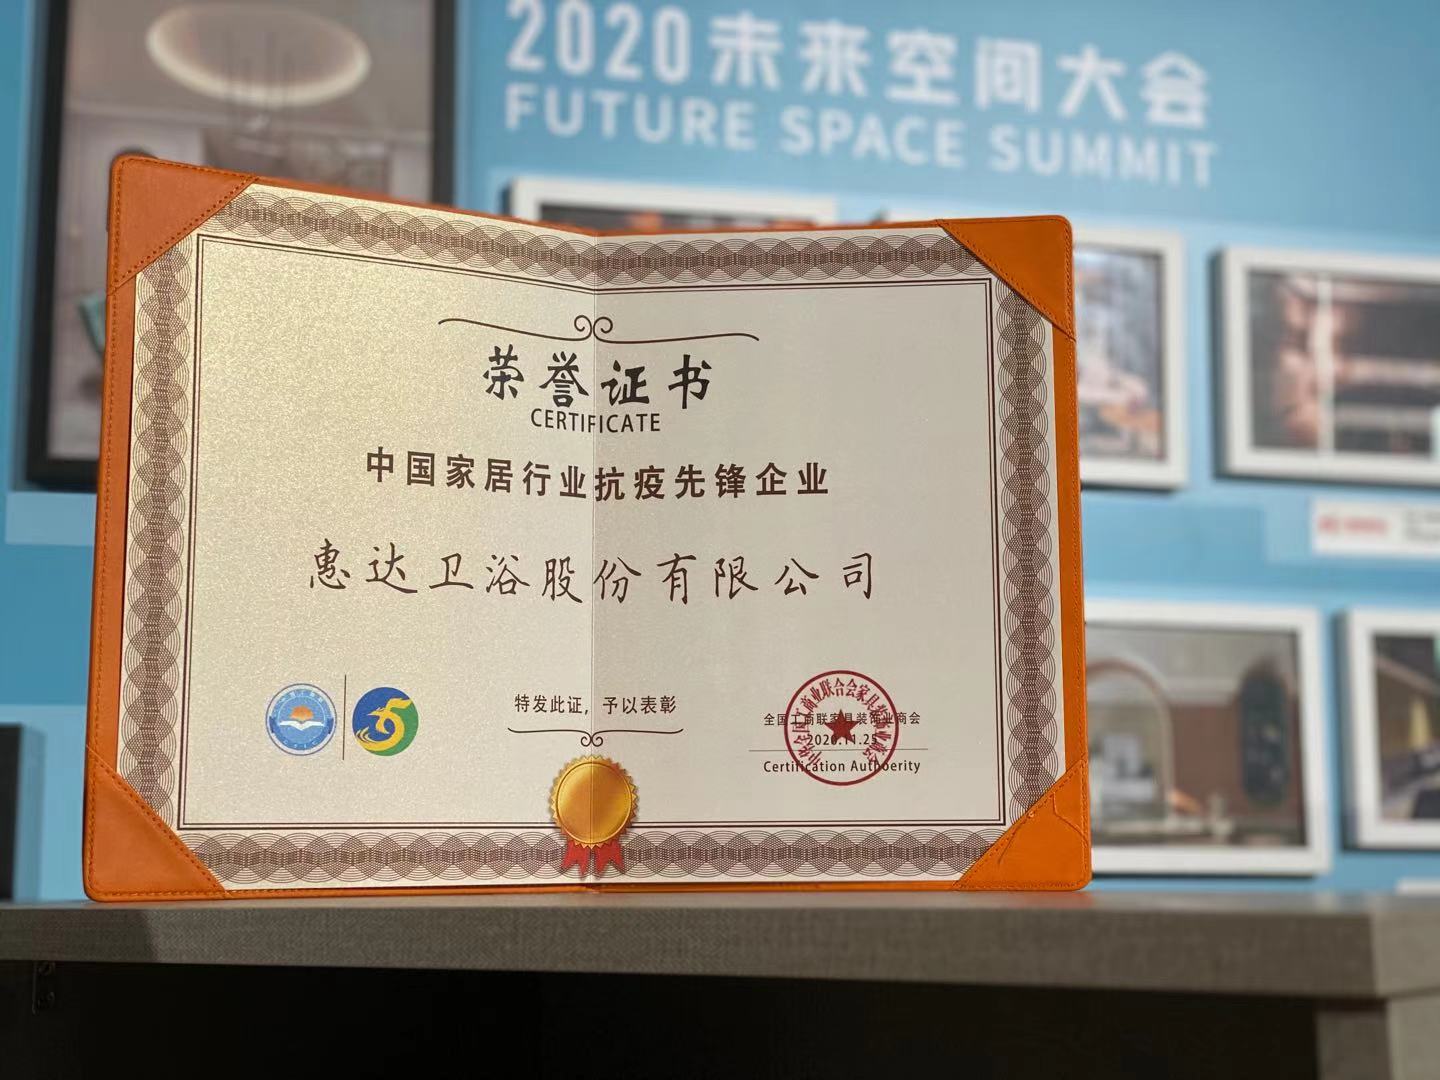 2020未来空间大会：6686体育
荣获“中国家居行业抗疫先锋企业”大奖！